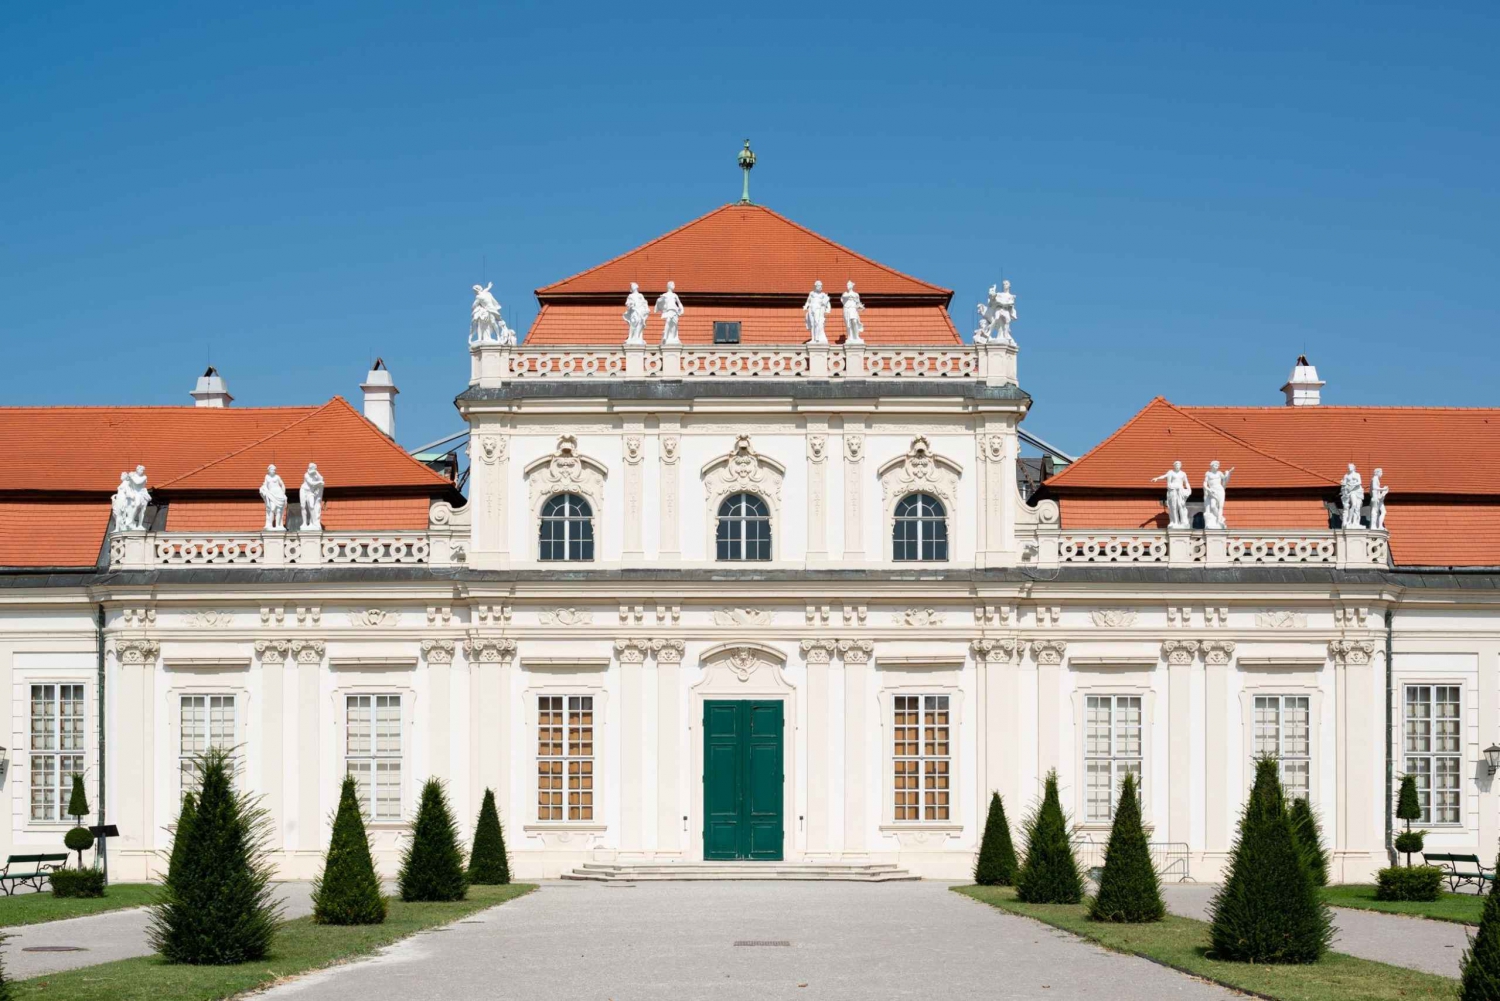 Viena: Ingresso para o Belvedere Inferior e Exposições Temporárias